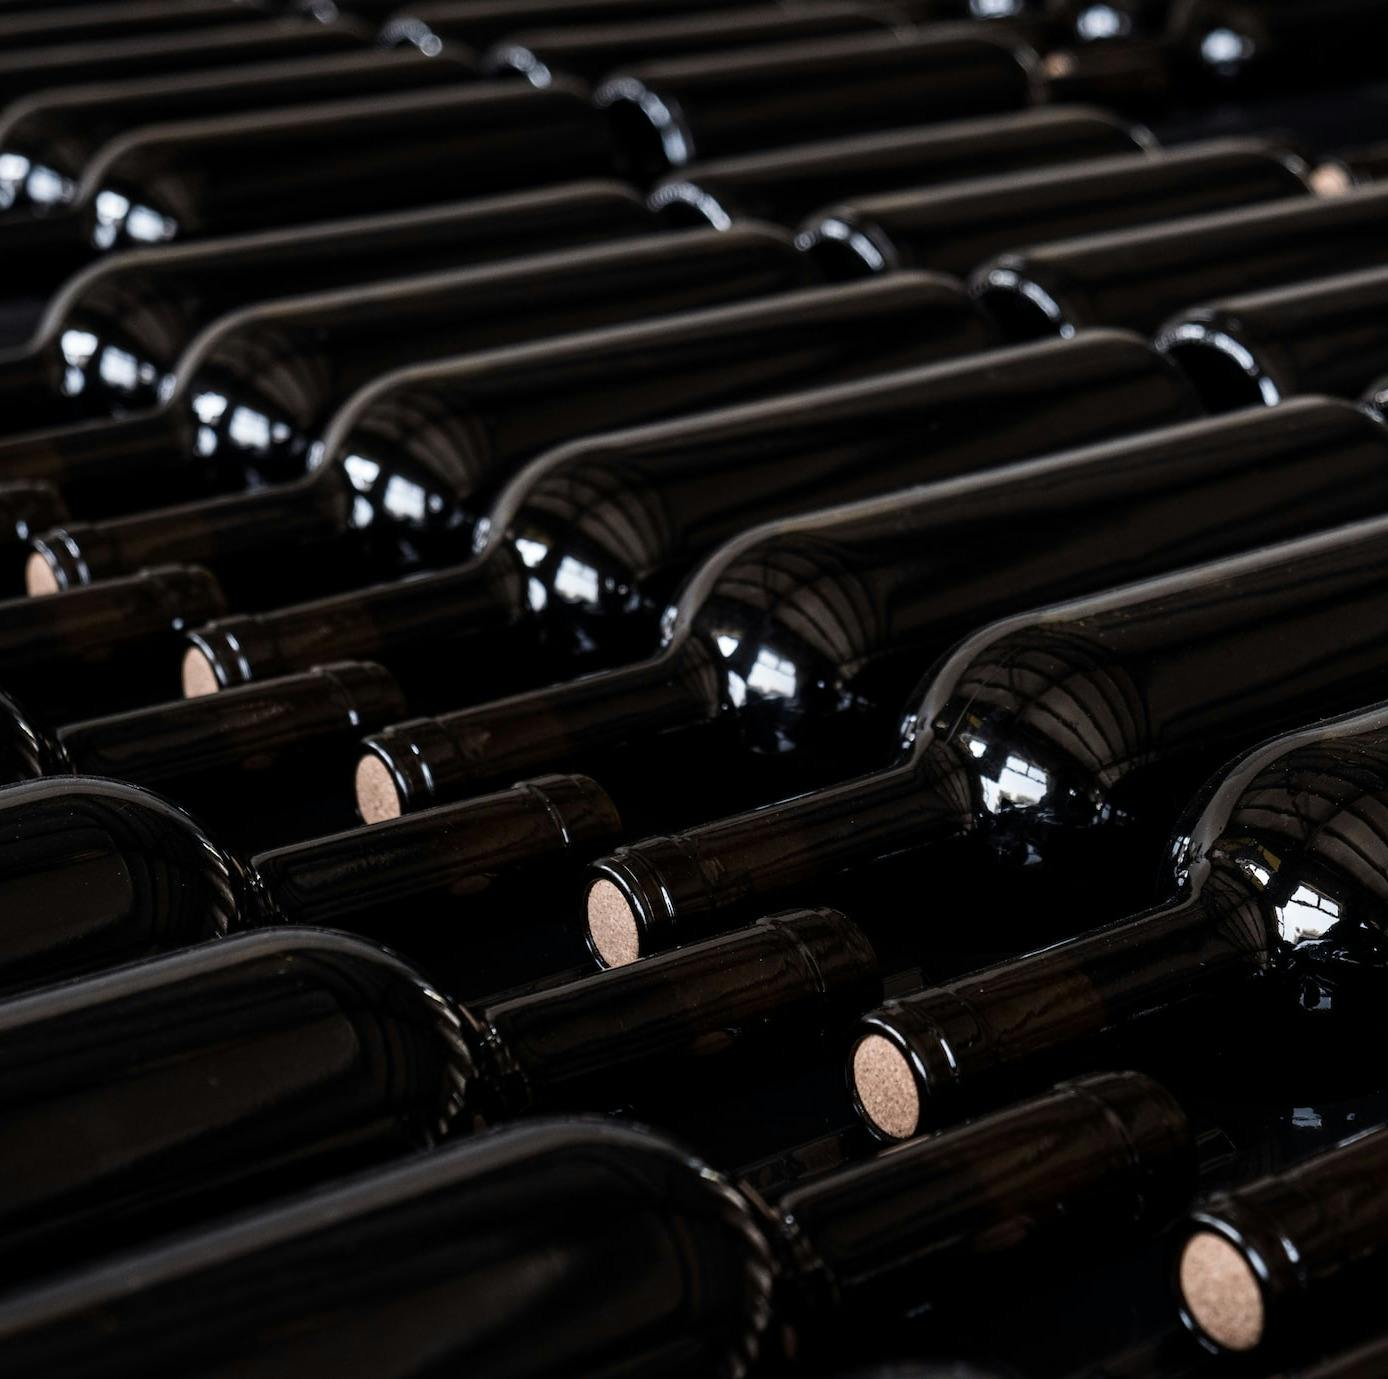 Proponete le vostre offerte di vini sulla nostra applicazione. | Mimelis